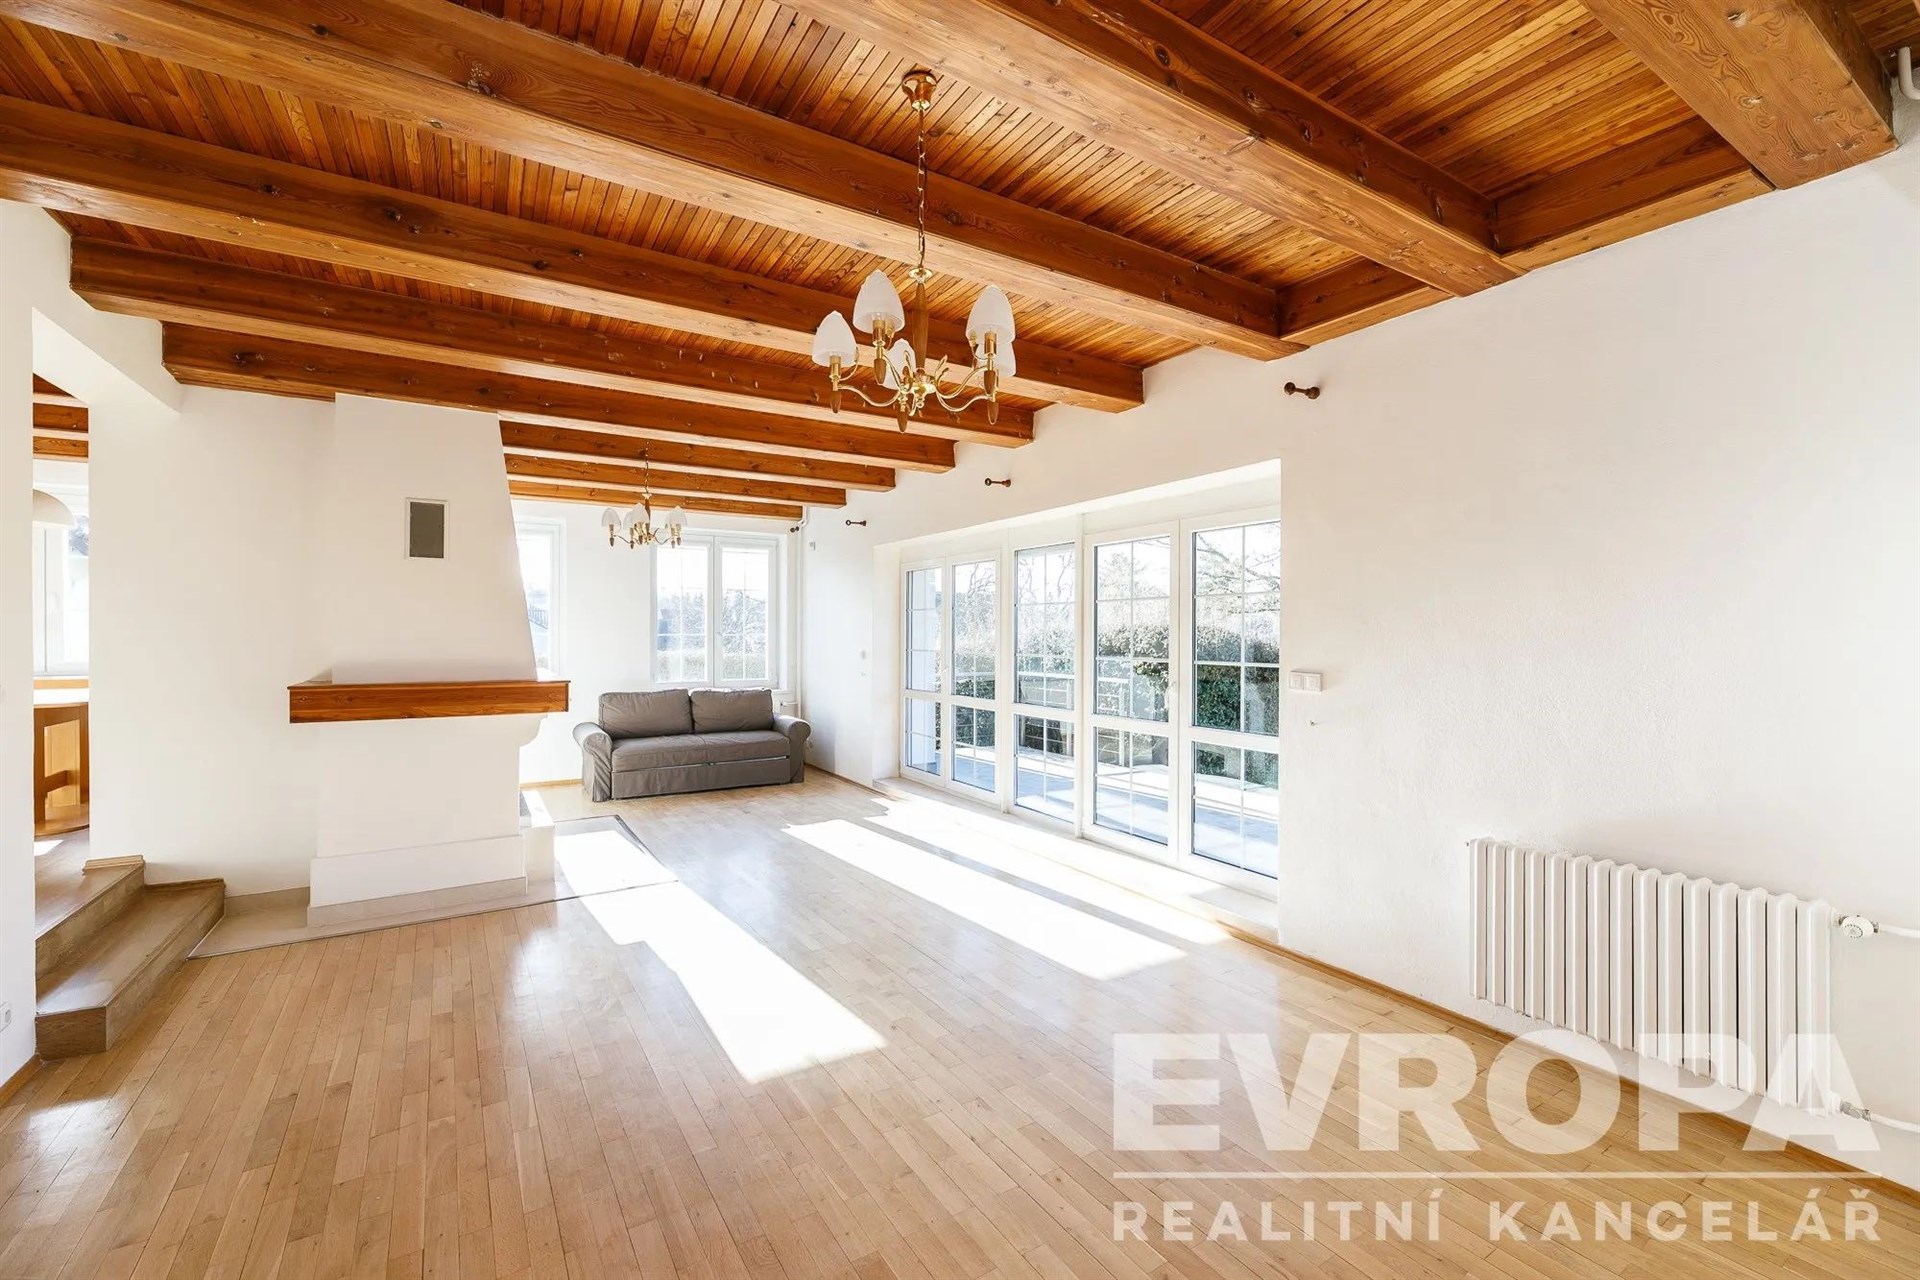 prázdná místnost s přirozené světlo, trámový strop, radiátor, a dřevěná podlaha